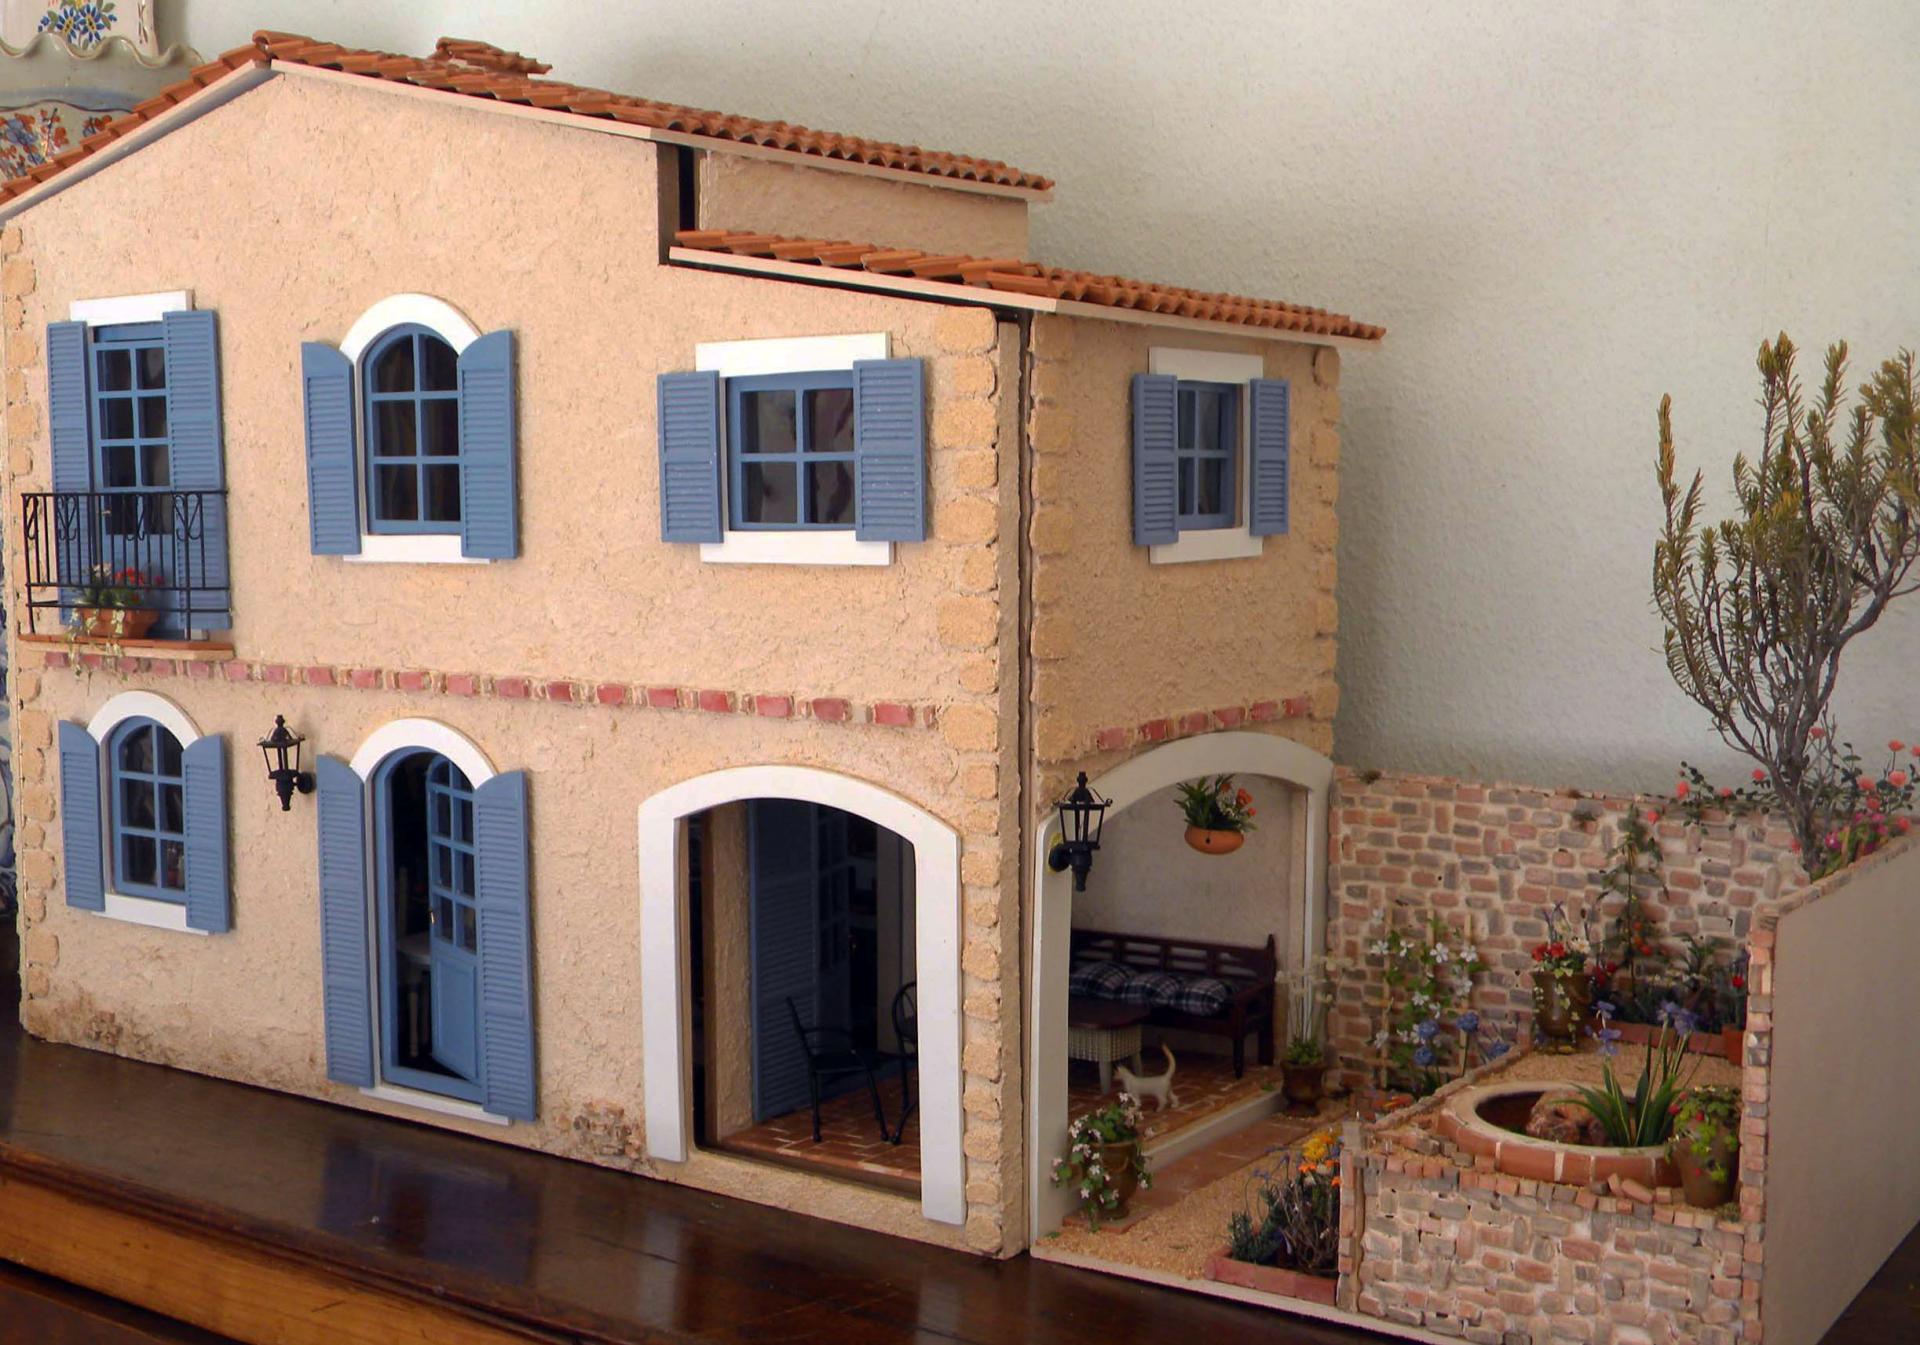 Maquette Maison Miniature Apaisante